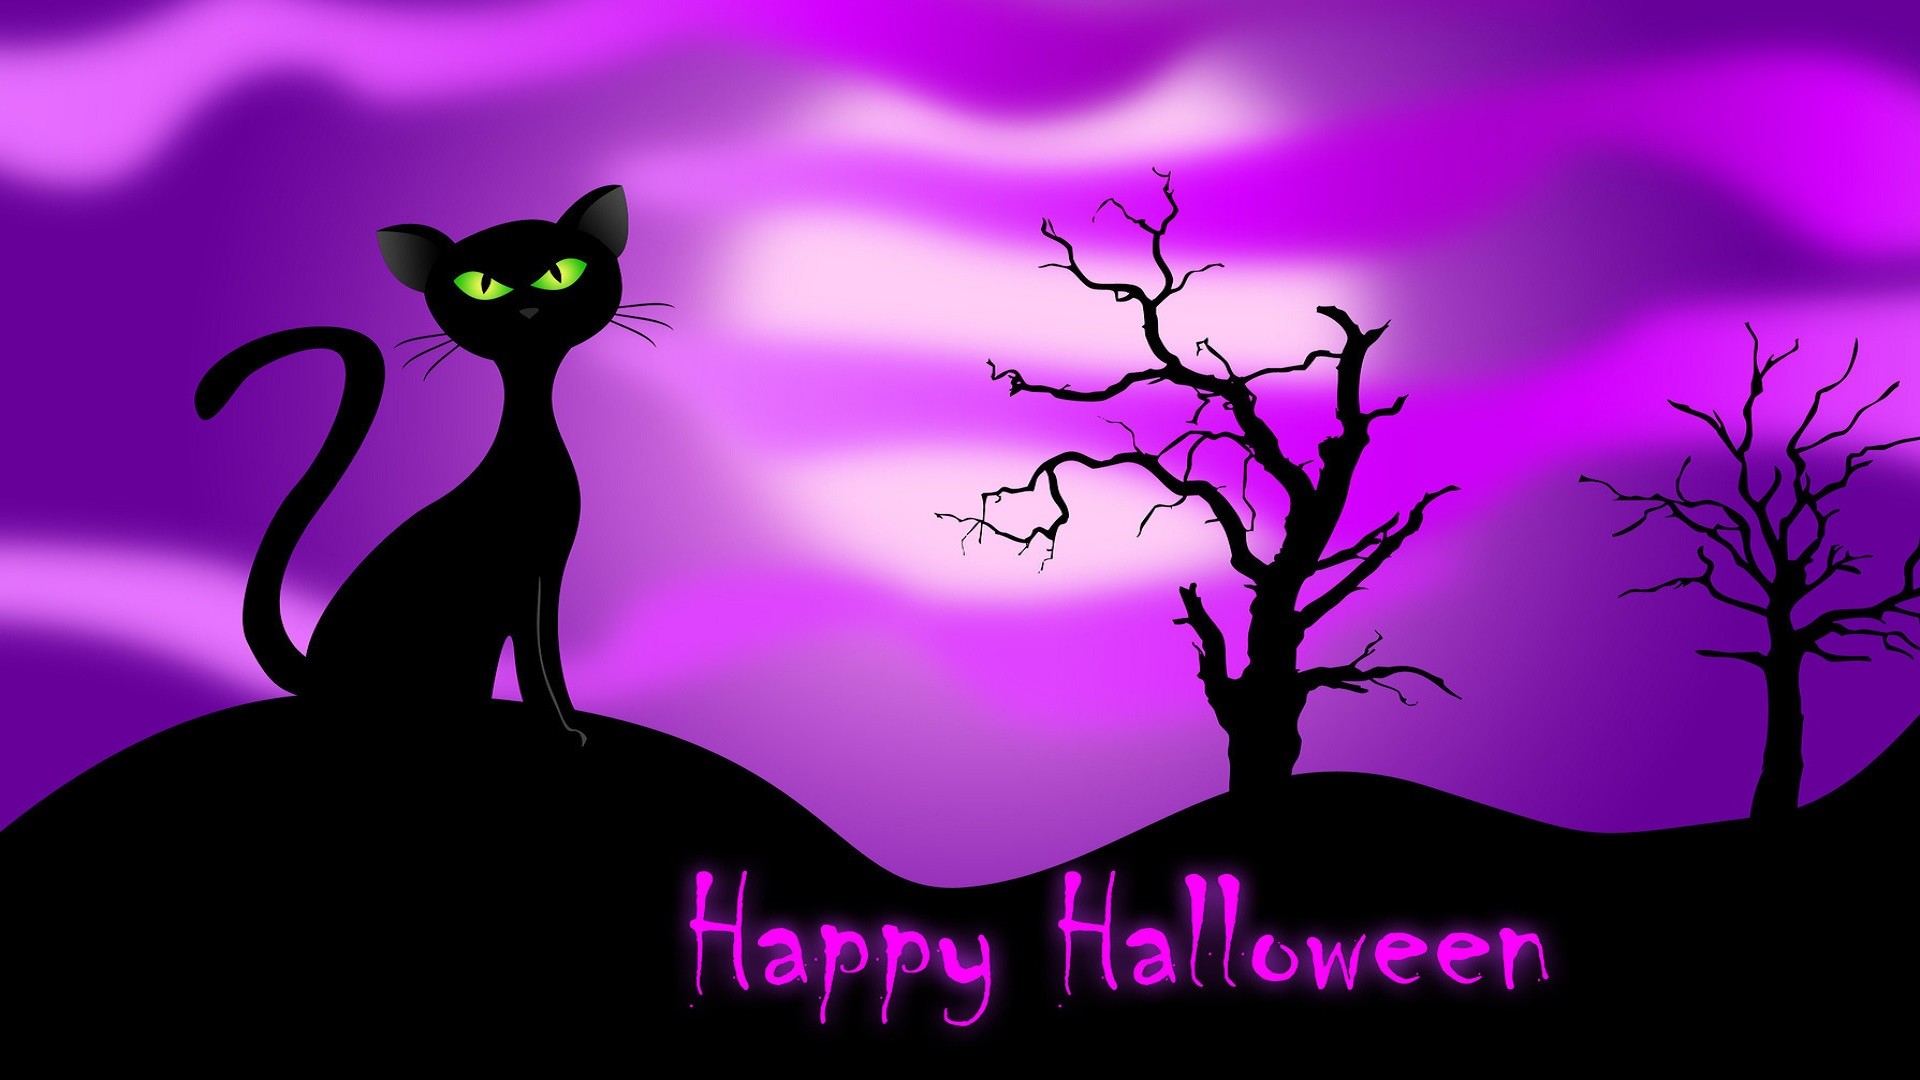 1920x1080 Halloween cats and kittens | happy-halloween-cat-halloween-backgrounds- halloween